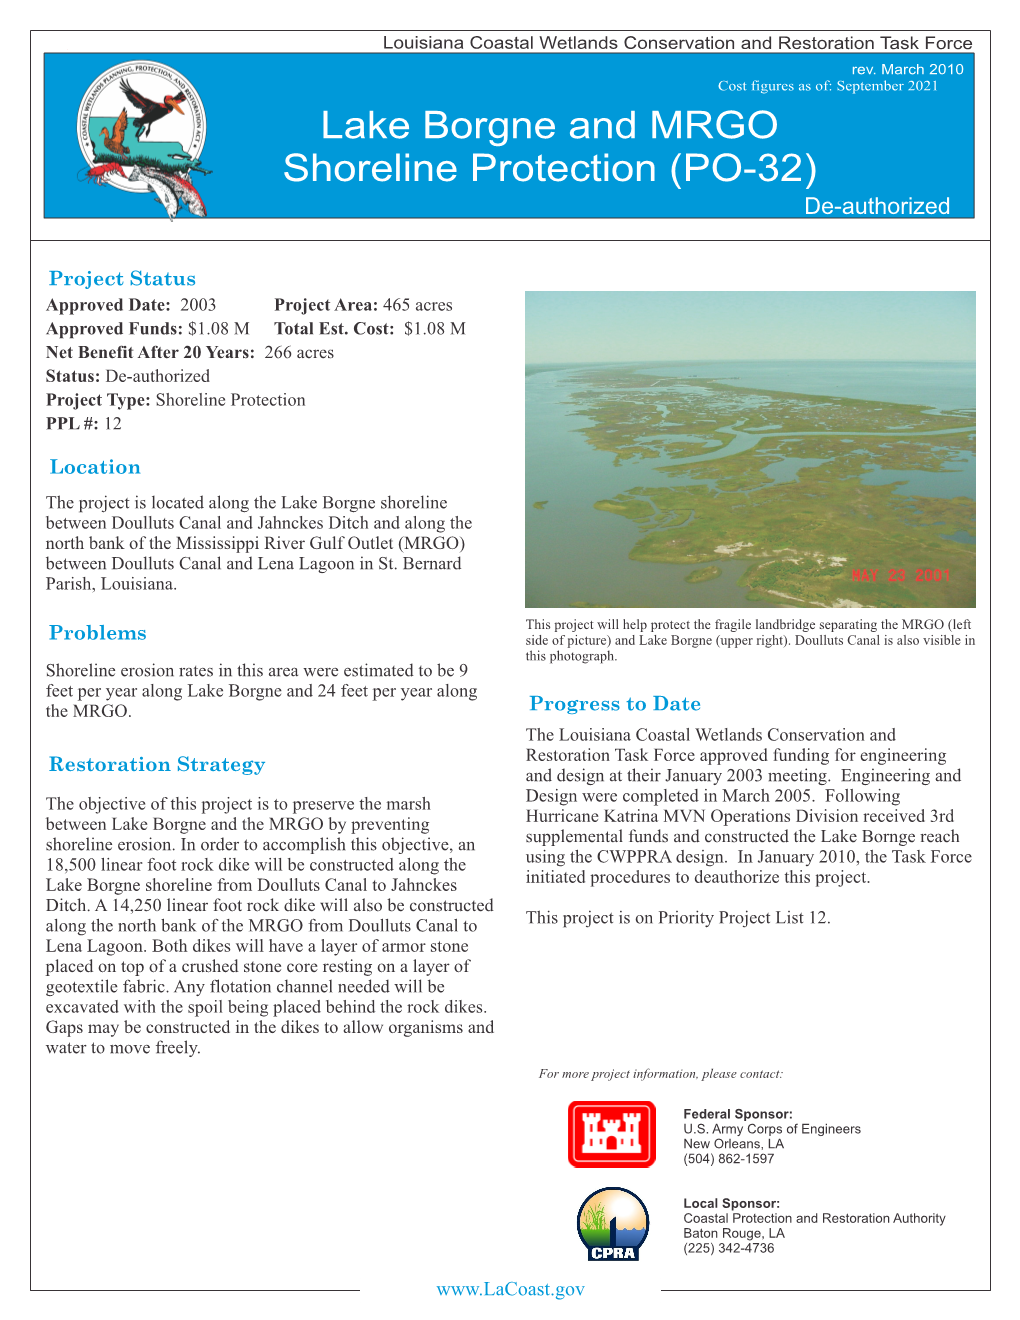 Lake Borgne and MRGO Shoreline Protection (PO-32) De-Authorized